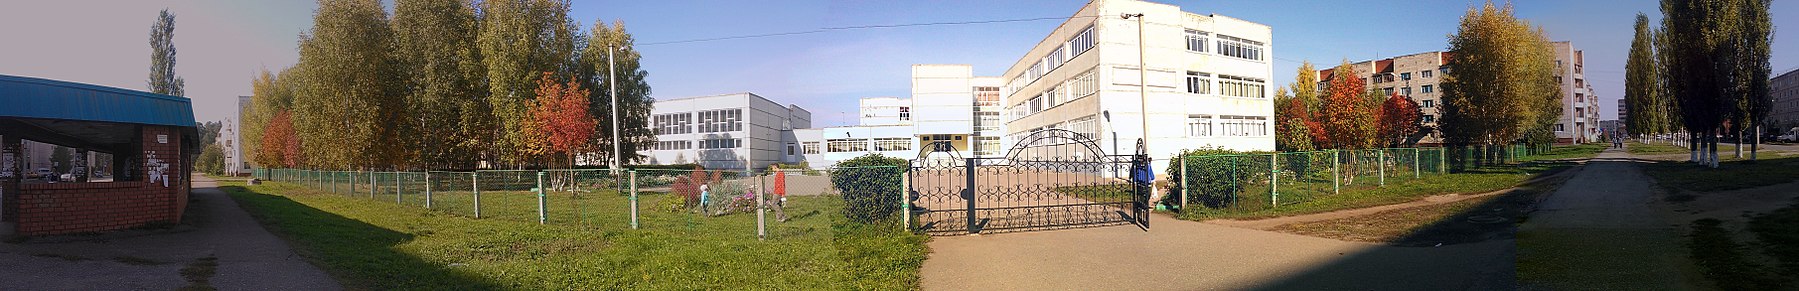 Школа 13 г. Нефтекамск - панорамамио.јпг